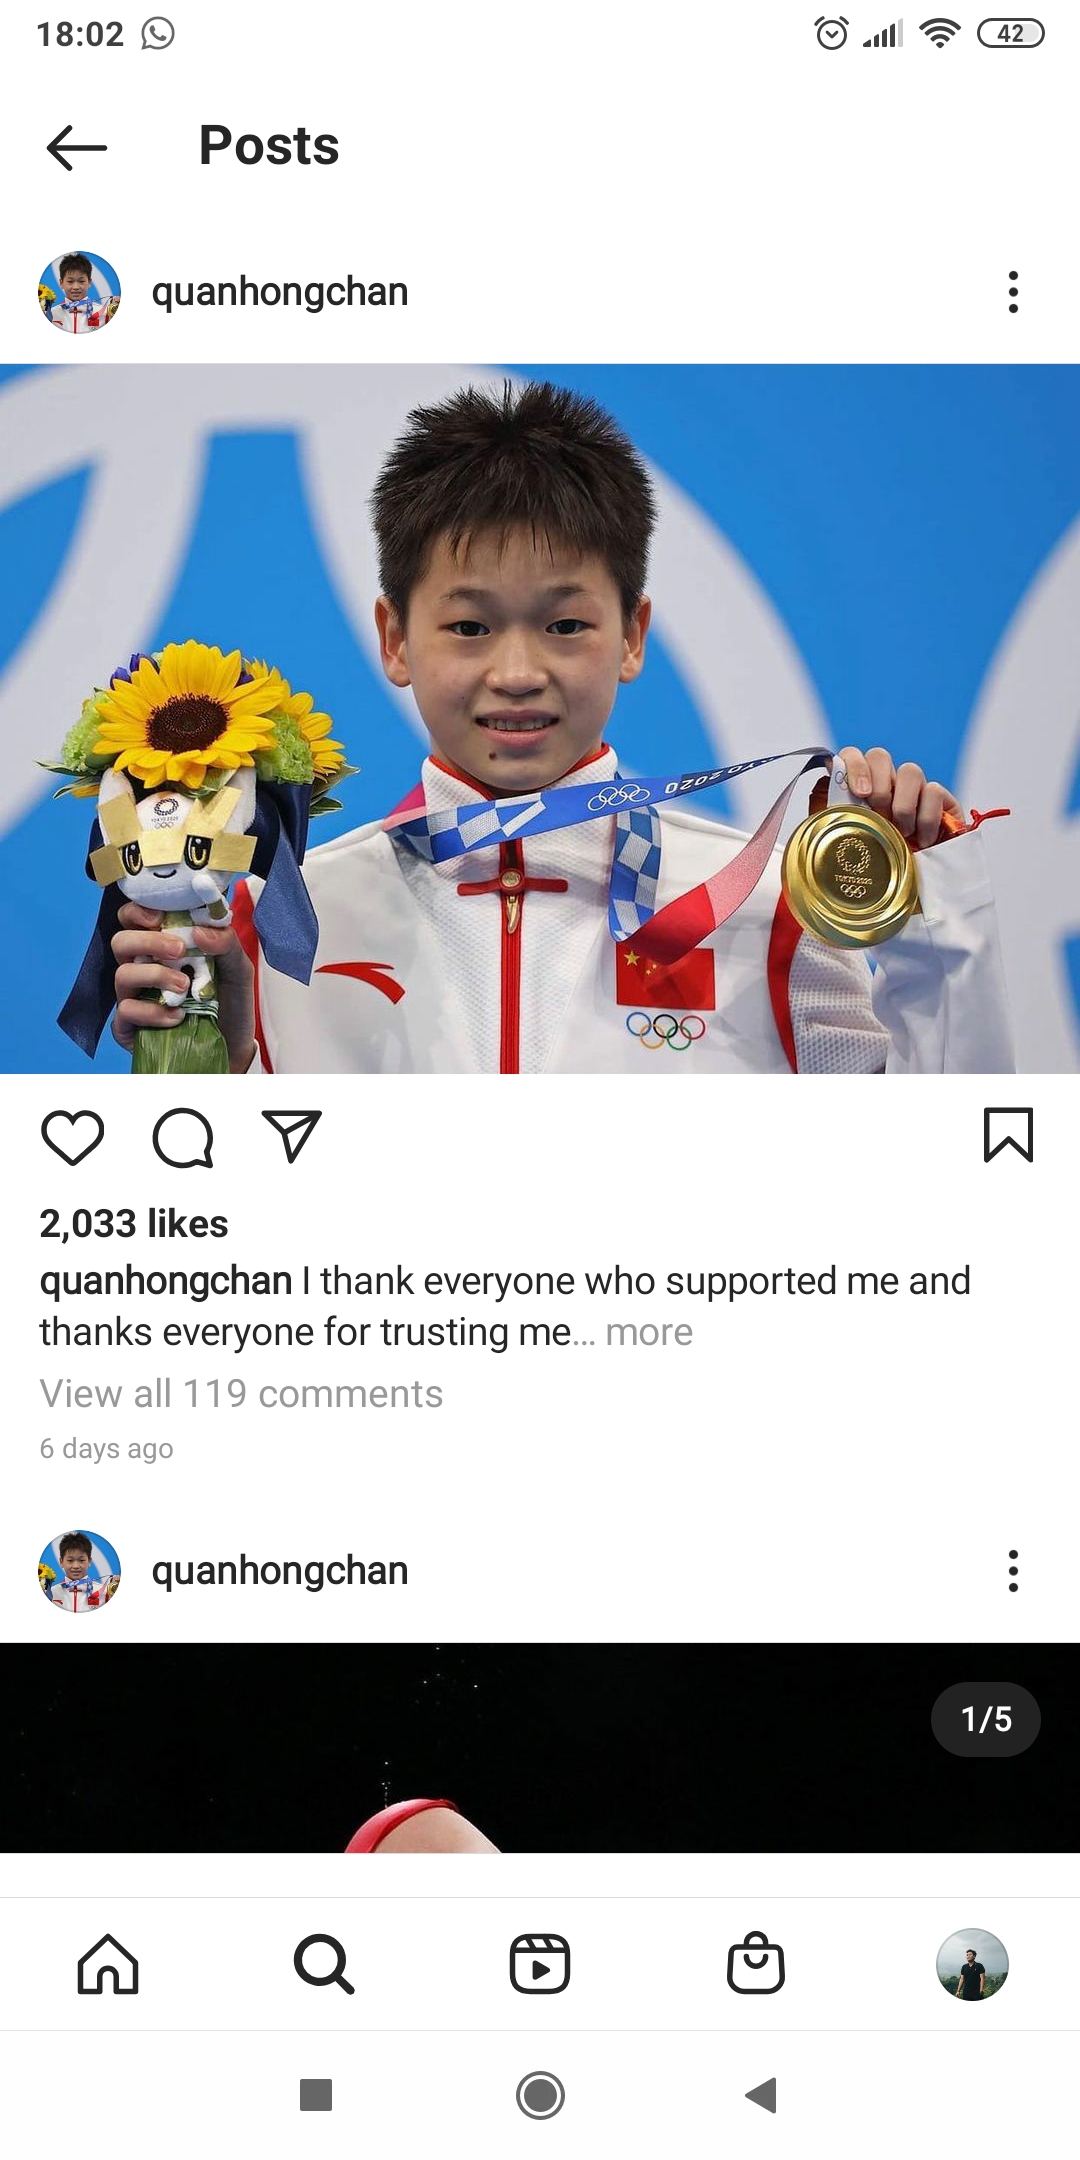 Raih Emas di Olimpiade Tokyo, Atlet Cina Ini Tolak Hadiah Rumah dan Uang